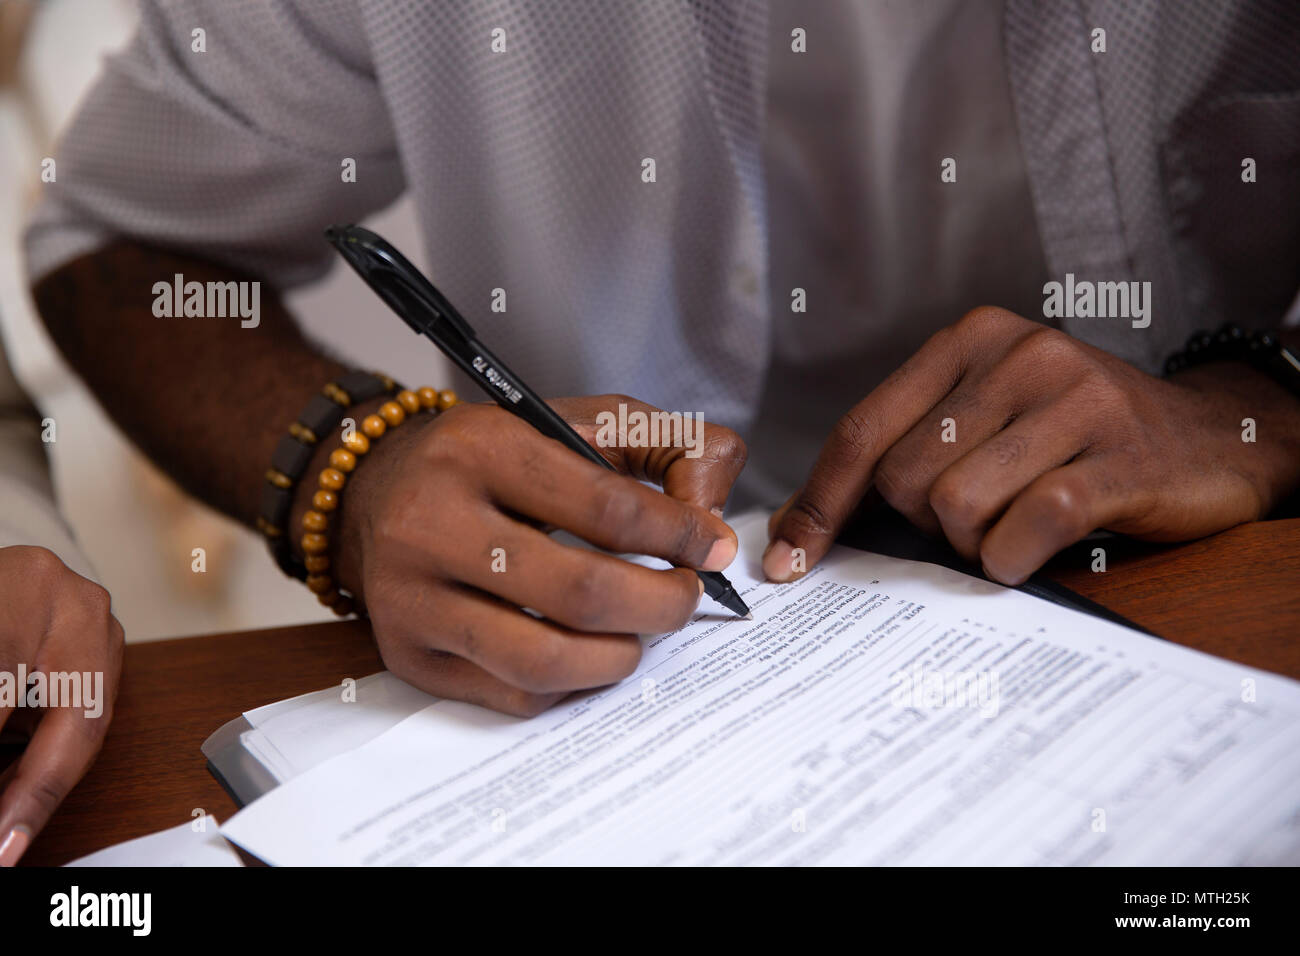 La signature de l'homme document Banque D'Images